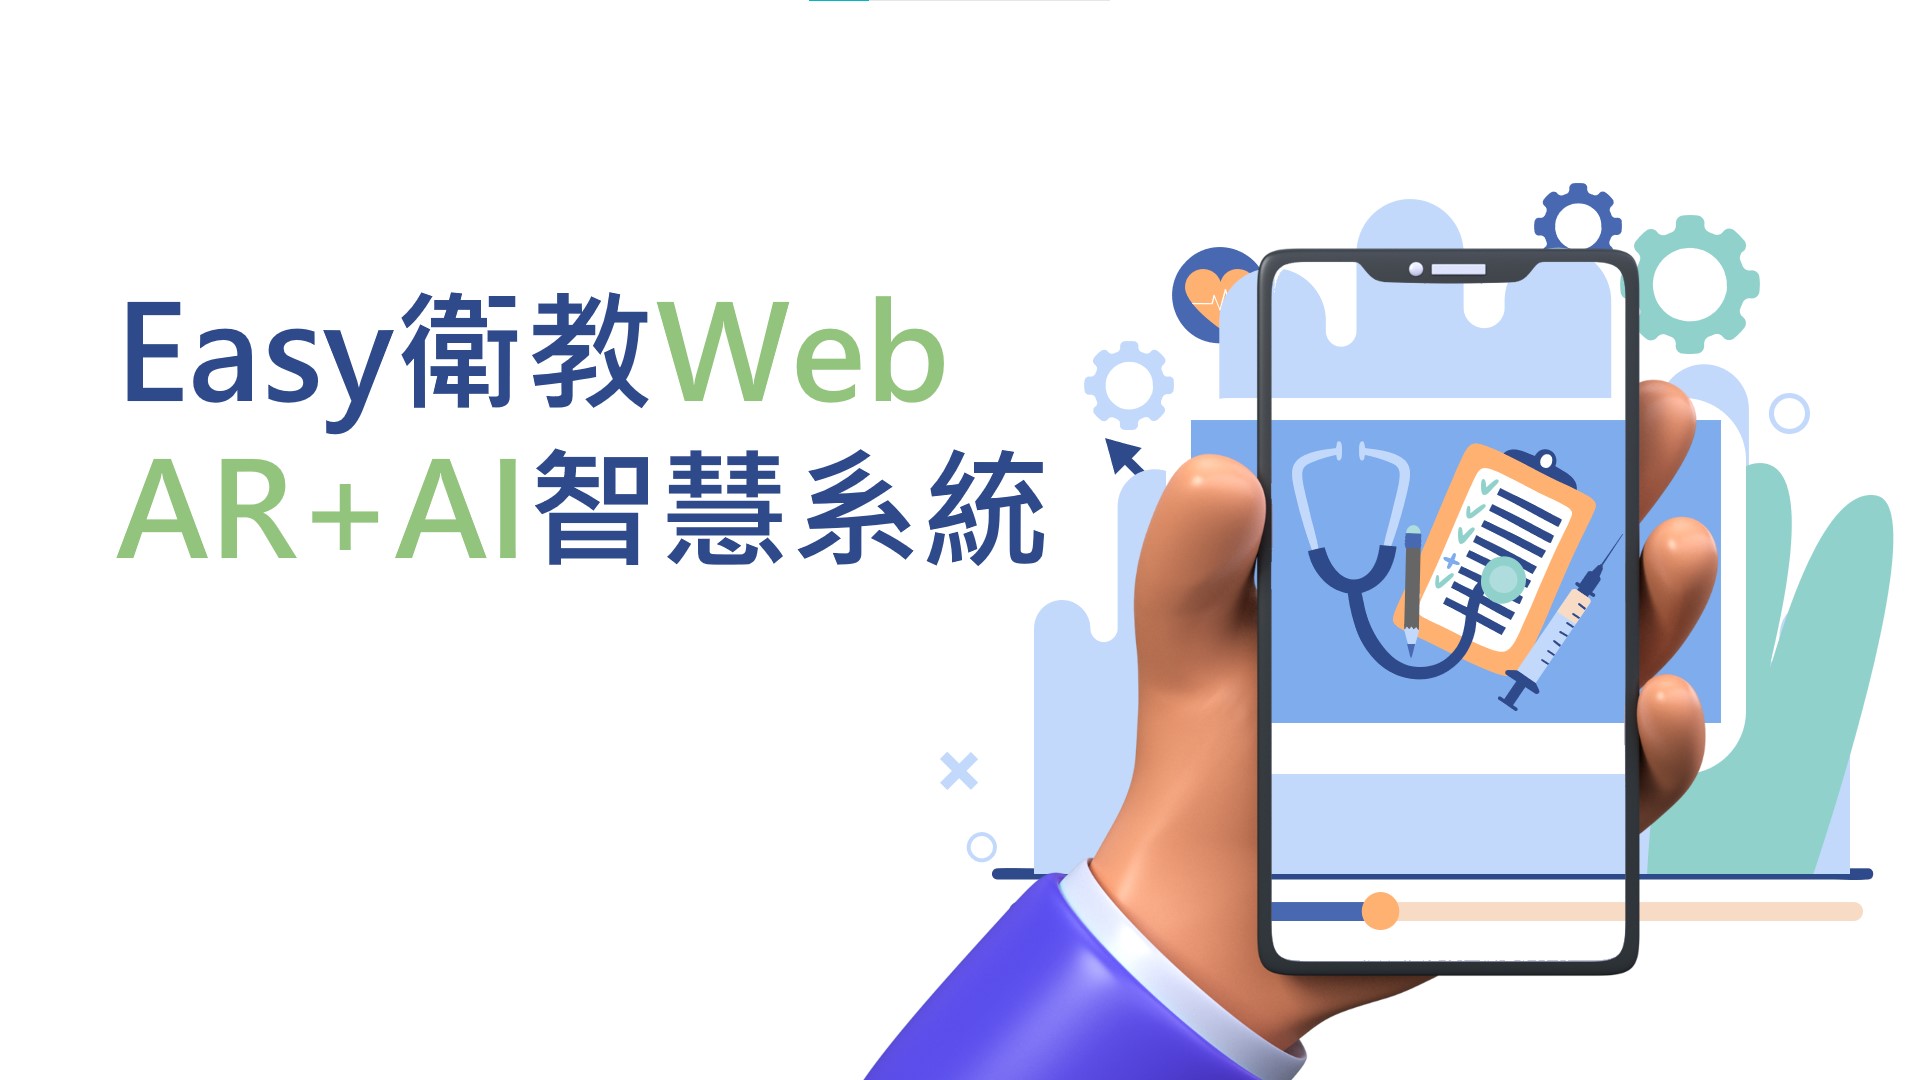 Easy衛教Web AR+AI智慧系統